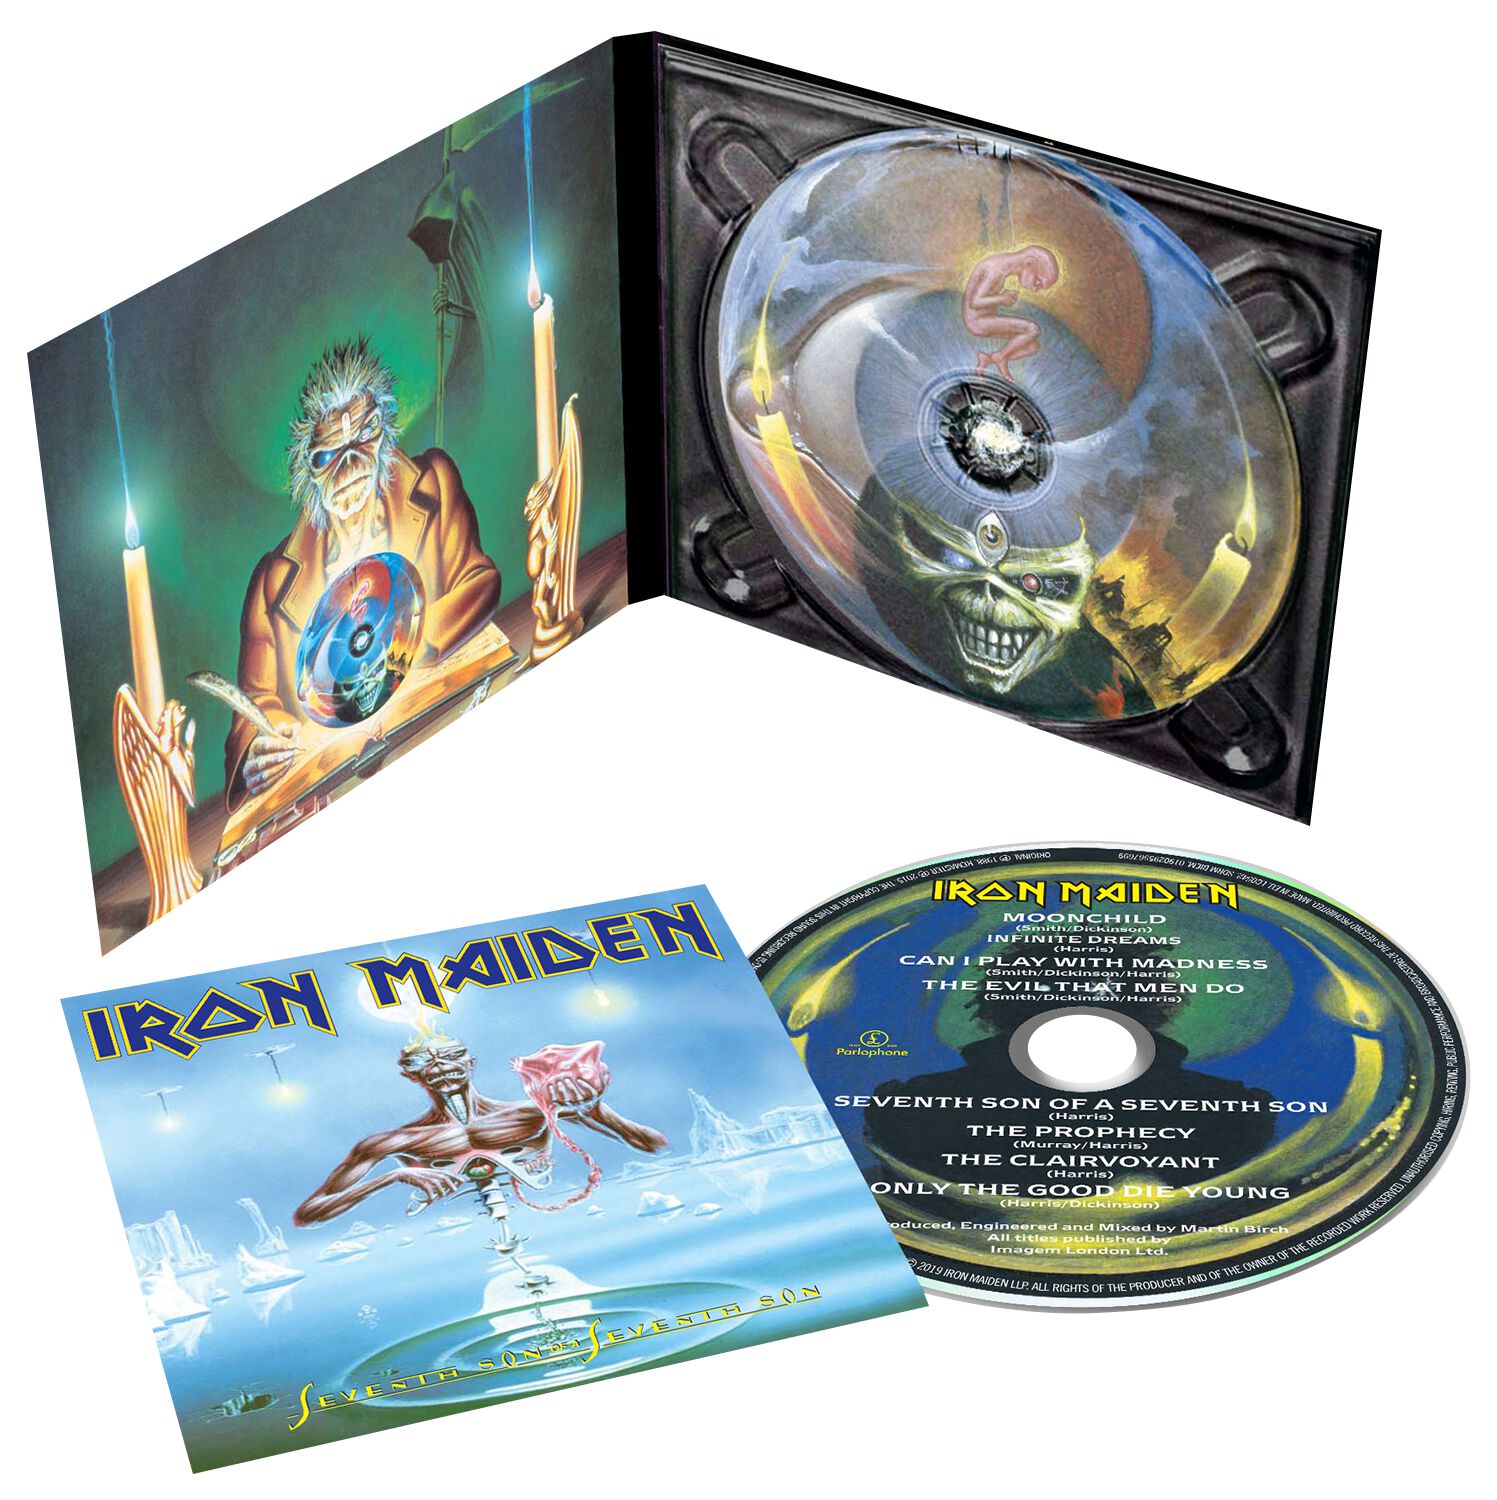 CD de Iron Maiden - Seventh son of a seventh son - para Standard